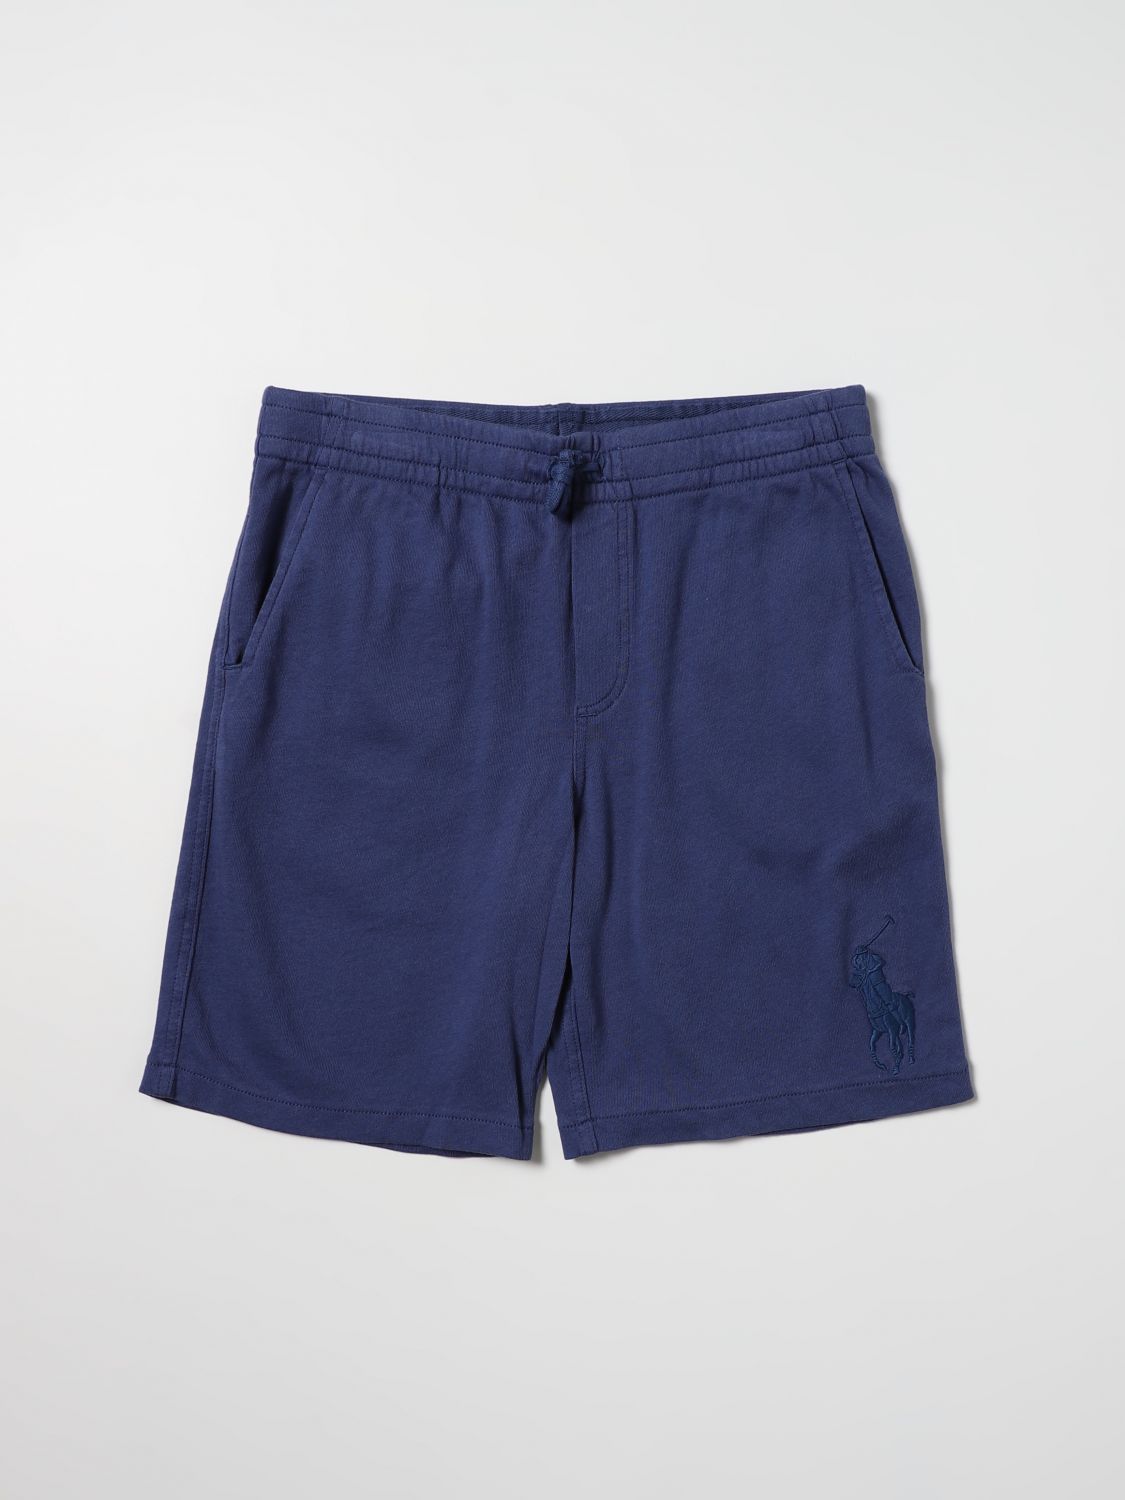 ショートパンツ ポロラルフローレン: ショートパンツ Polo Ralph Lauren 男の子 ブルー 1